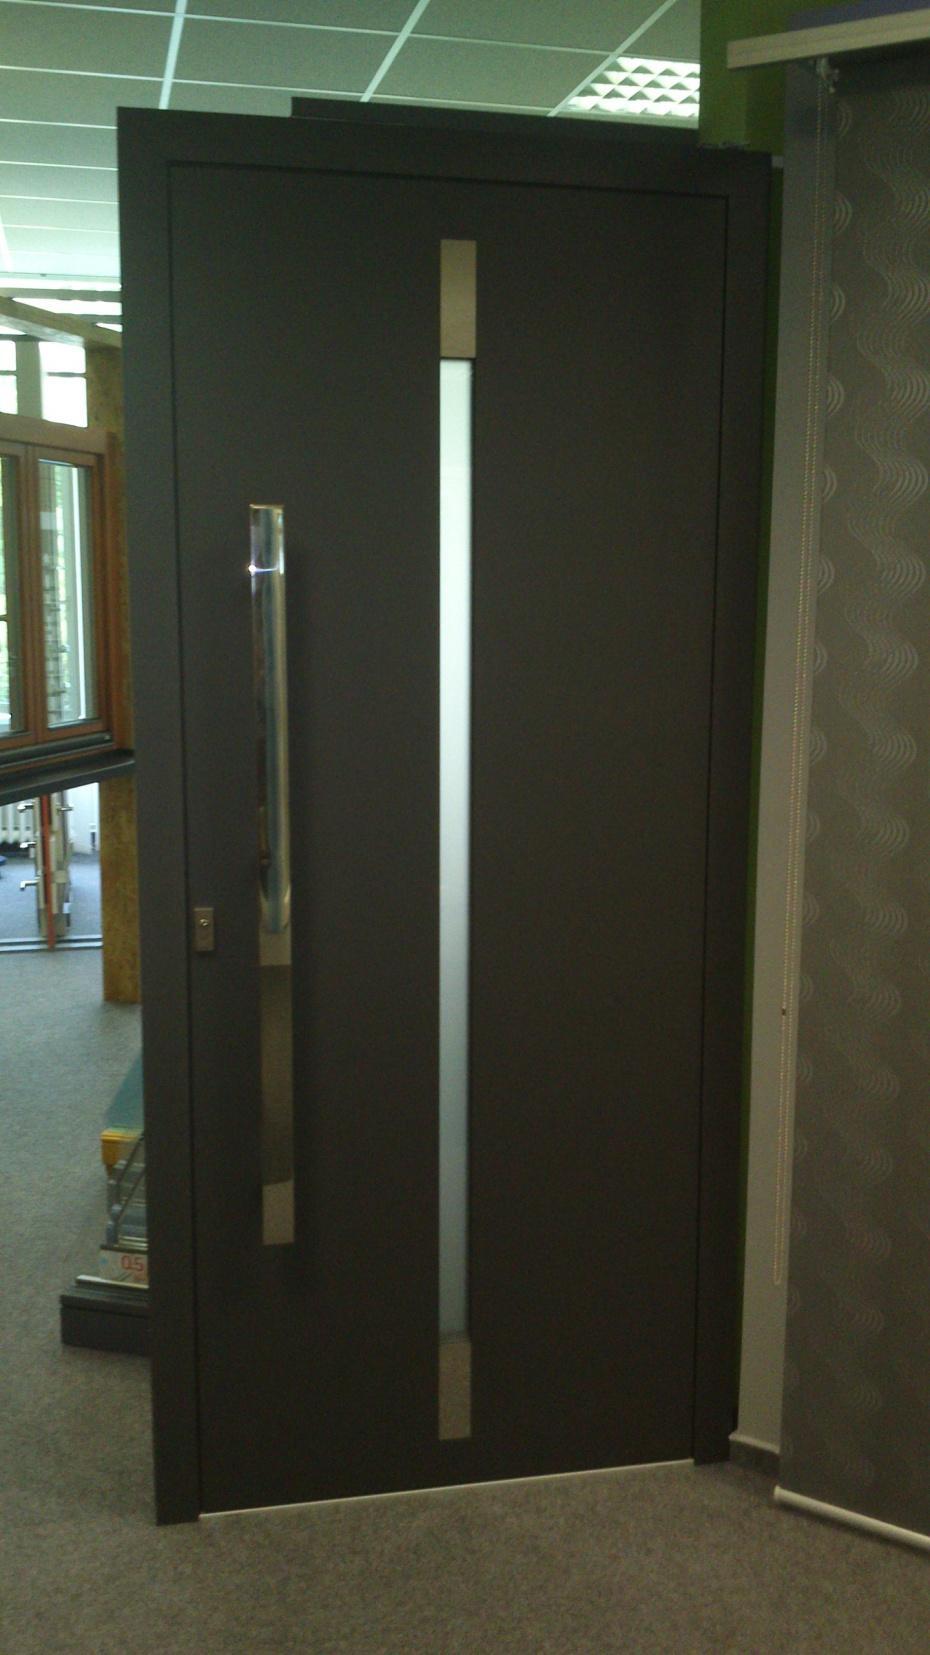 30 - Vchodové dveře Aluhaus Hliníkové vchodové dveře s nakládanou výplní otvíravé dovnitř, levé, síla 90